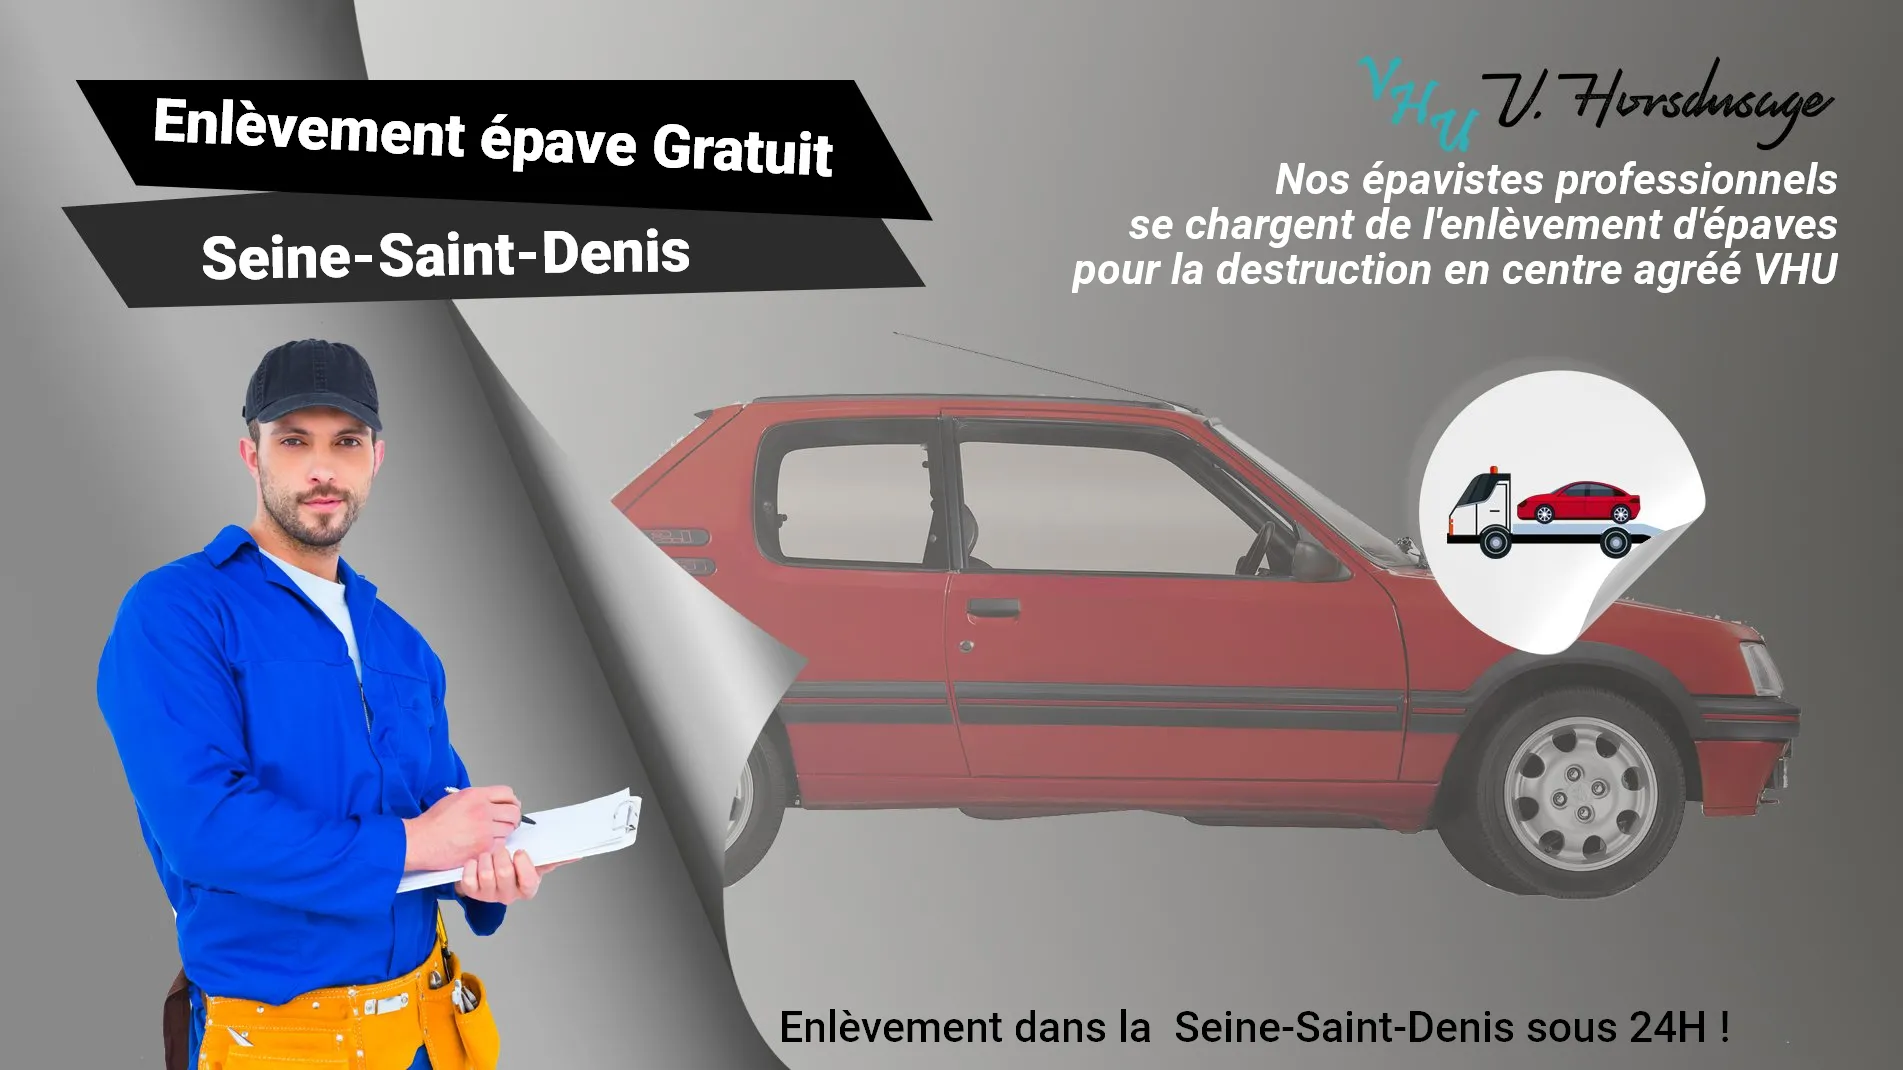 Pour un enlèvement gratuit à Seine-Saint-Denis, contactez nos épavistes agréé VHU